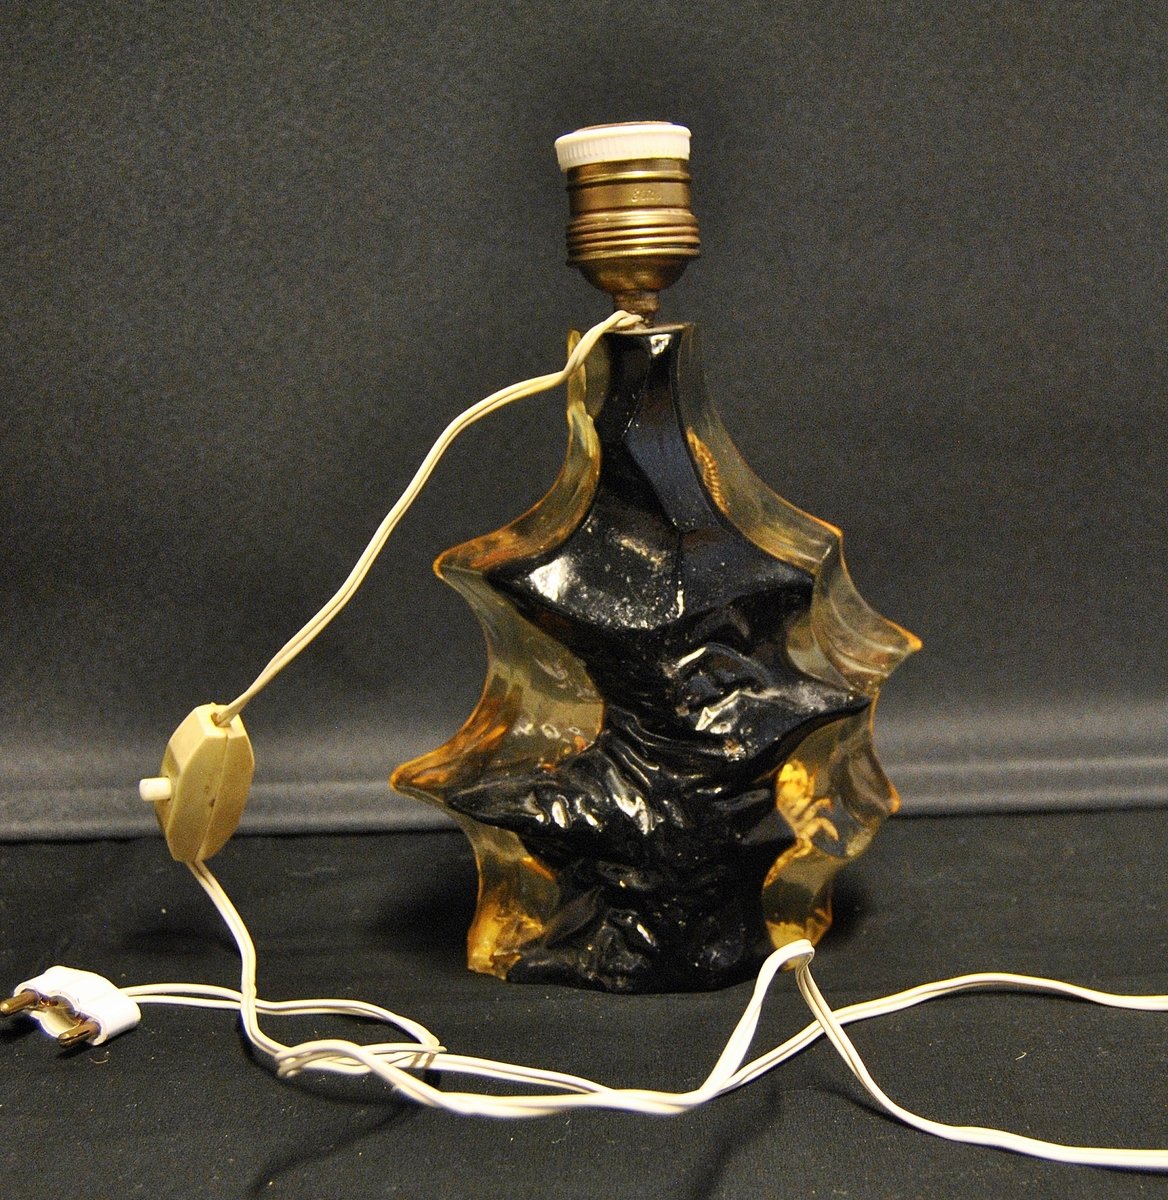 Lampe med uregulær form. Støpt i lucite recin akryl. Støpt i plasen er korall, sjøhest, krabbe og skjell. Er mest sannsynlig fra 1960-1980- årene. Mulig souvenir fra Spania.